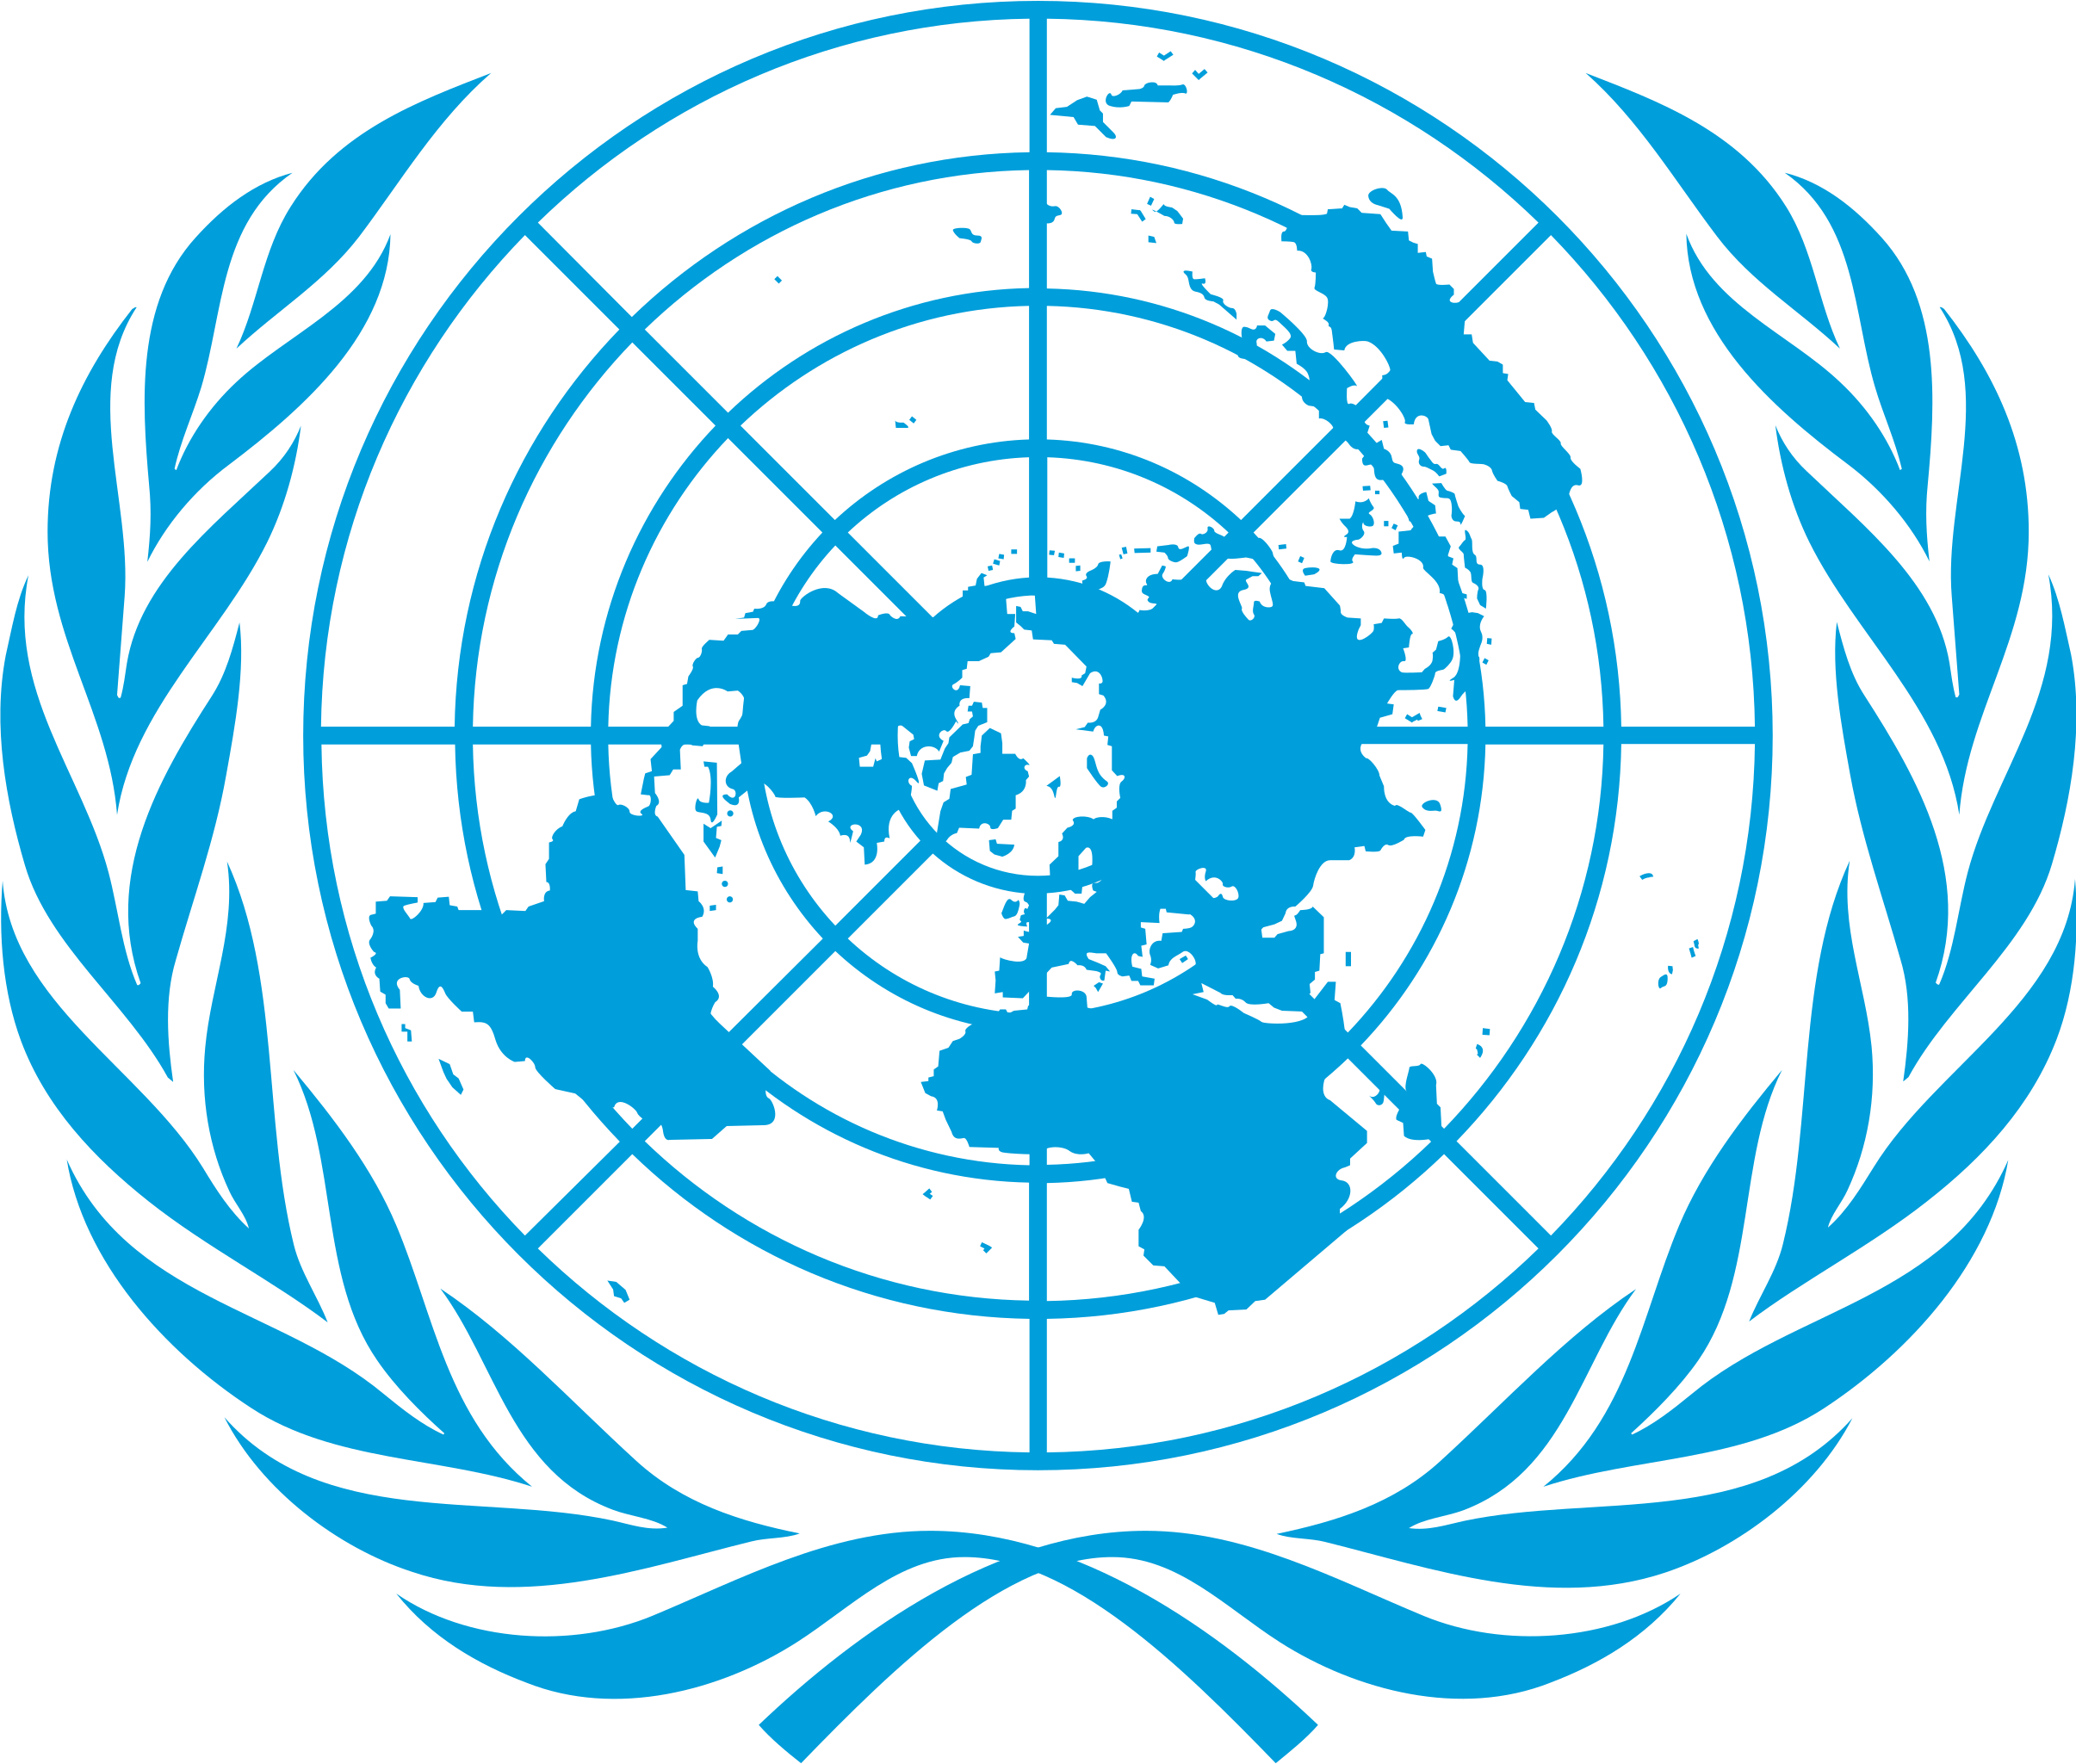 UN Emblem Blue